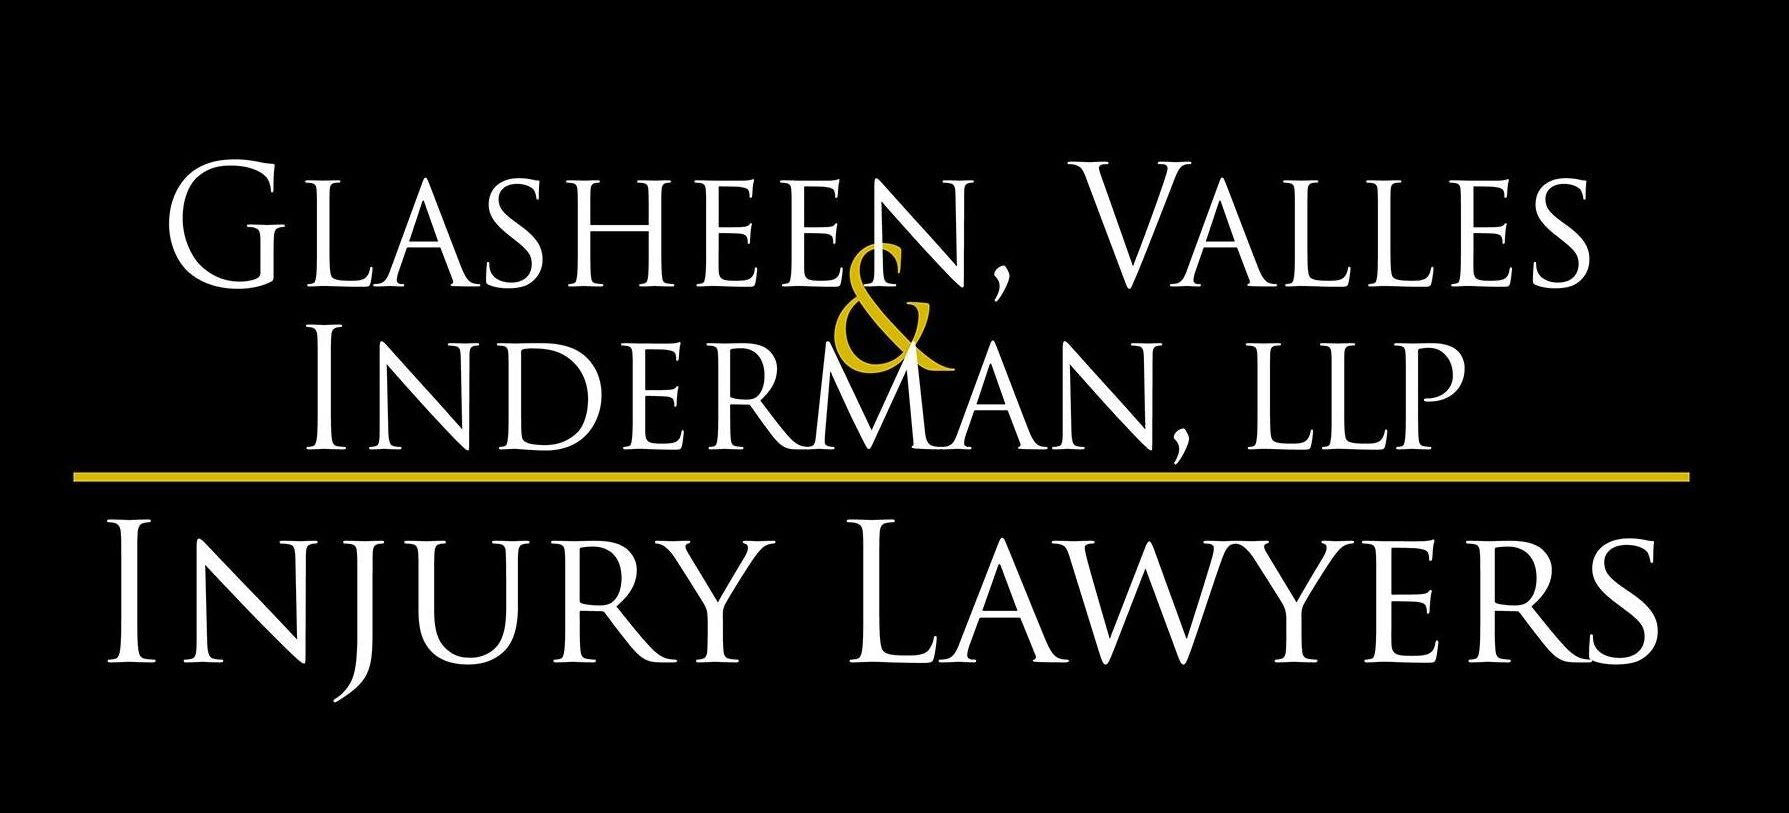 Glasheen, Valles & Inderman, LLP Injury Lawyers